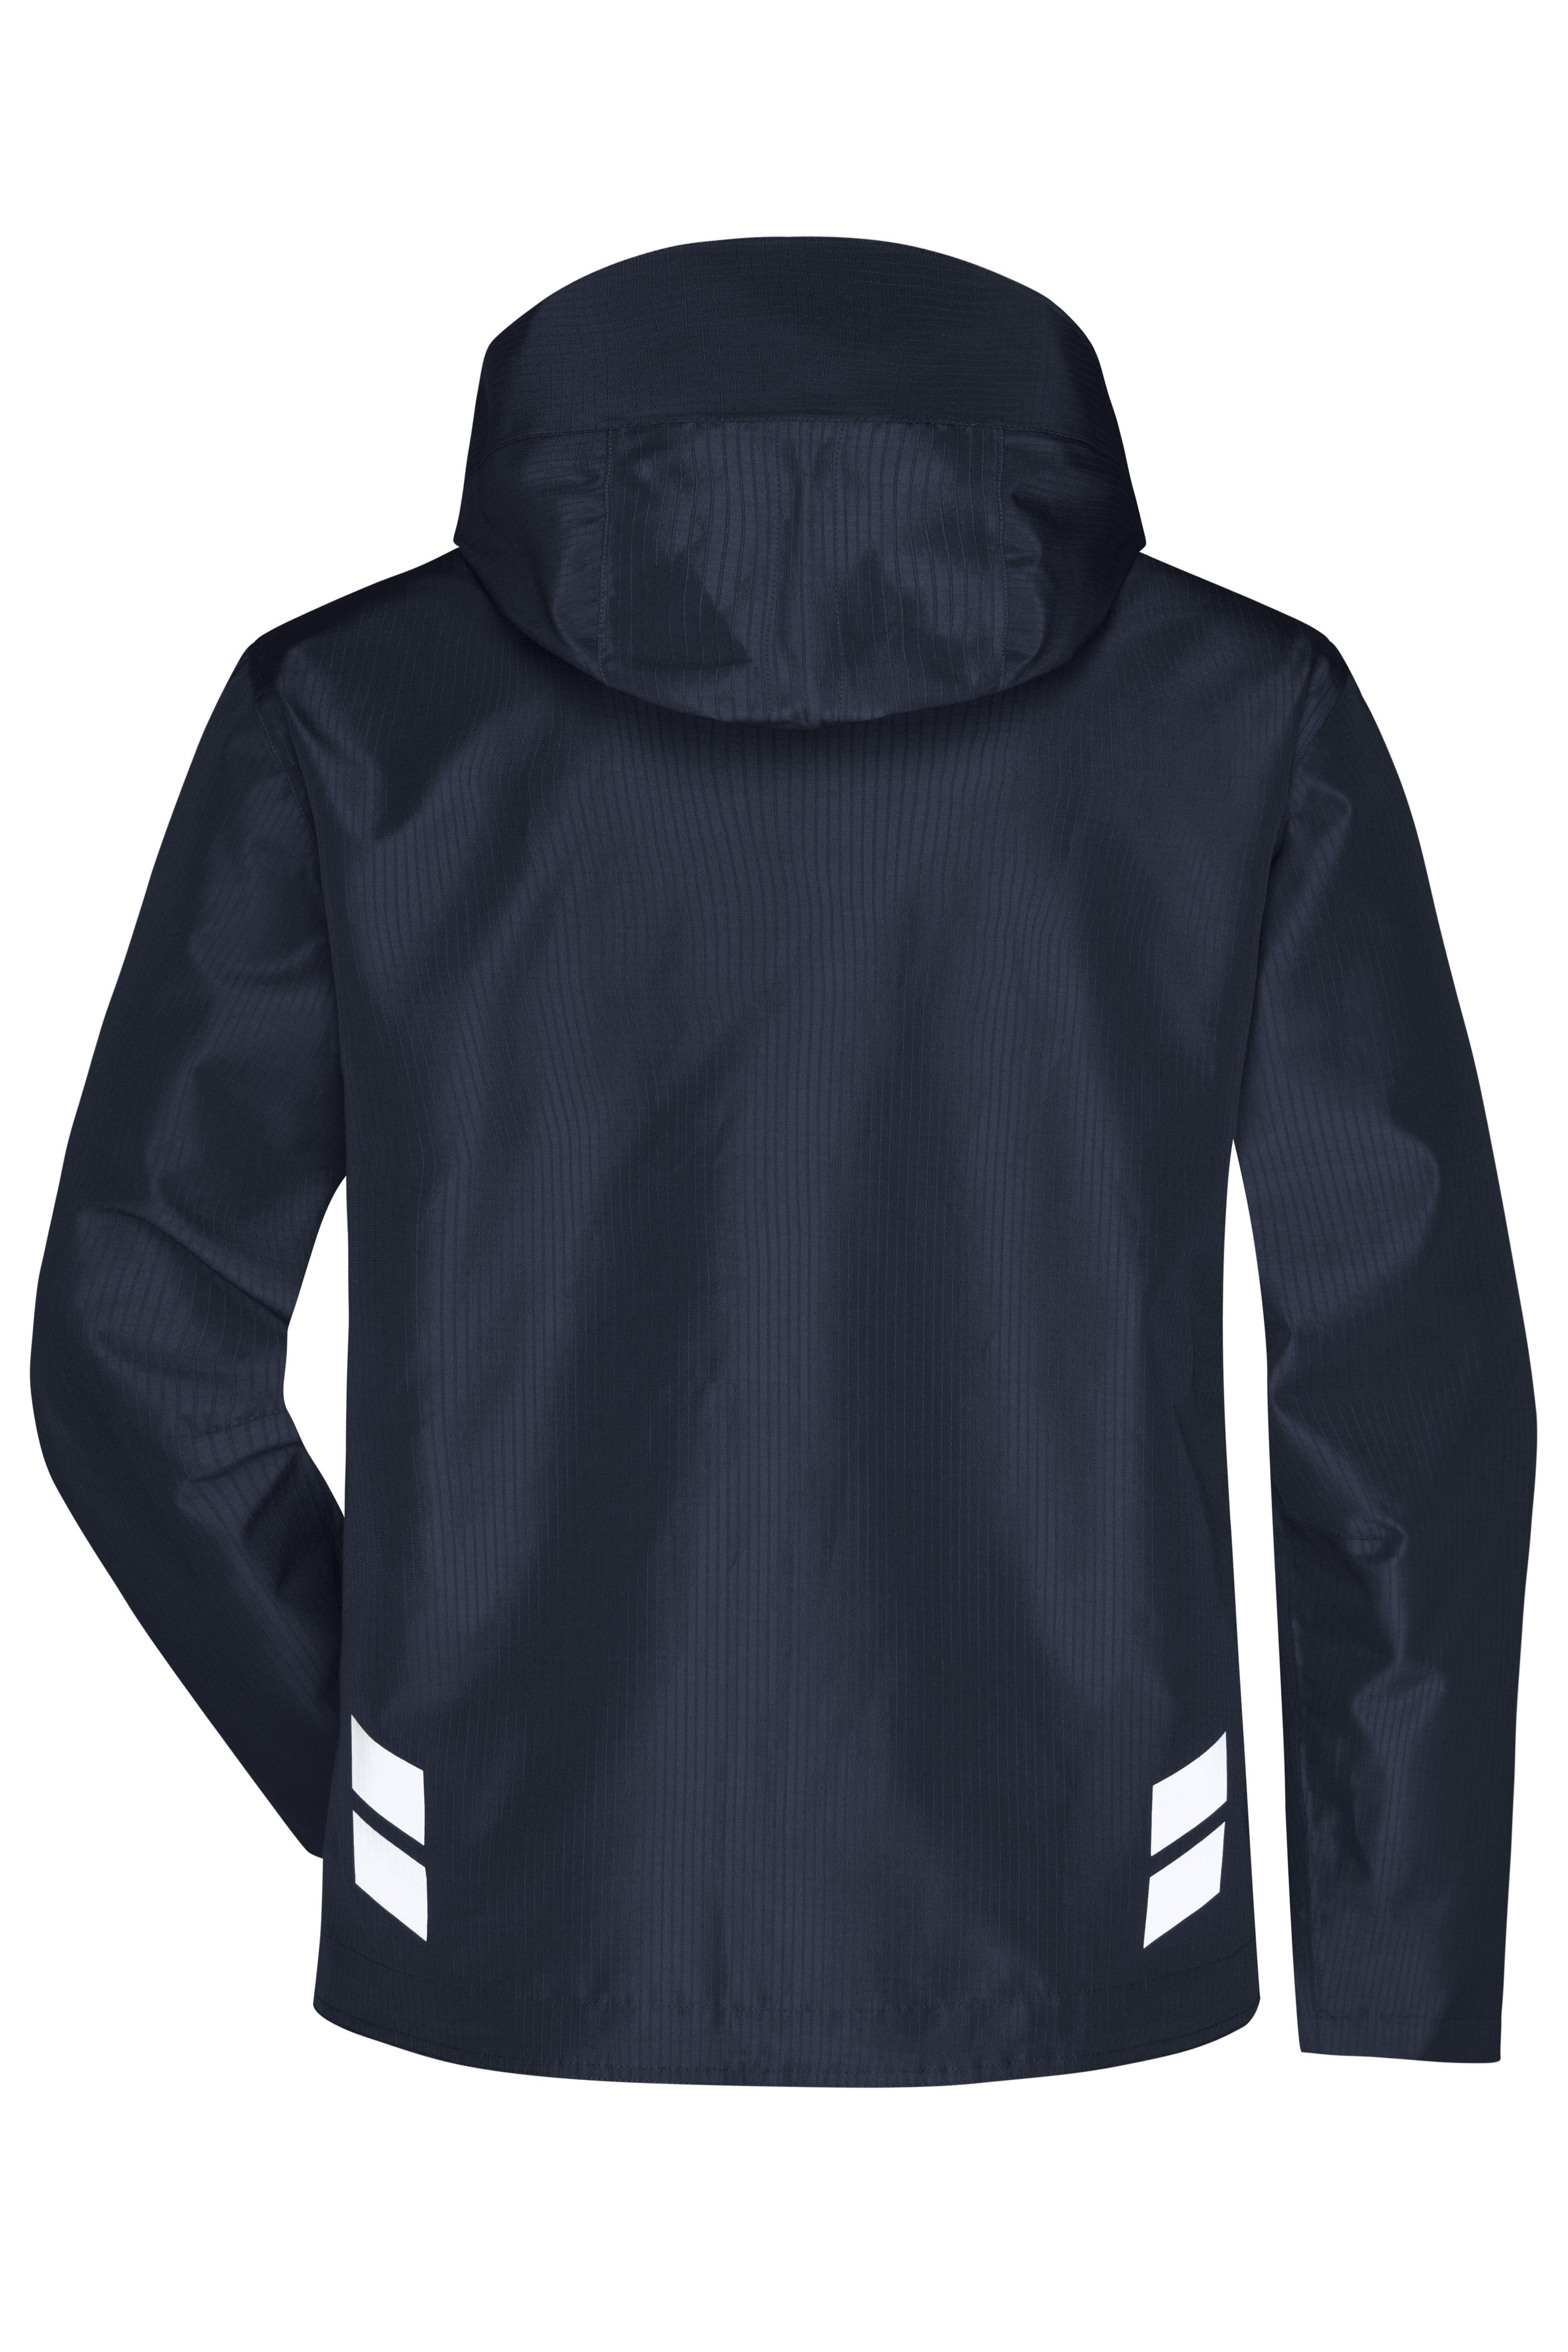 Hardshell Workwear Jacket JN1814 Professionelle, wind- und wasserdichte, atmungsaktive Arbeitsjacke für extreme Wetterbedingungen